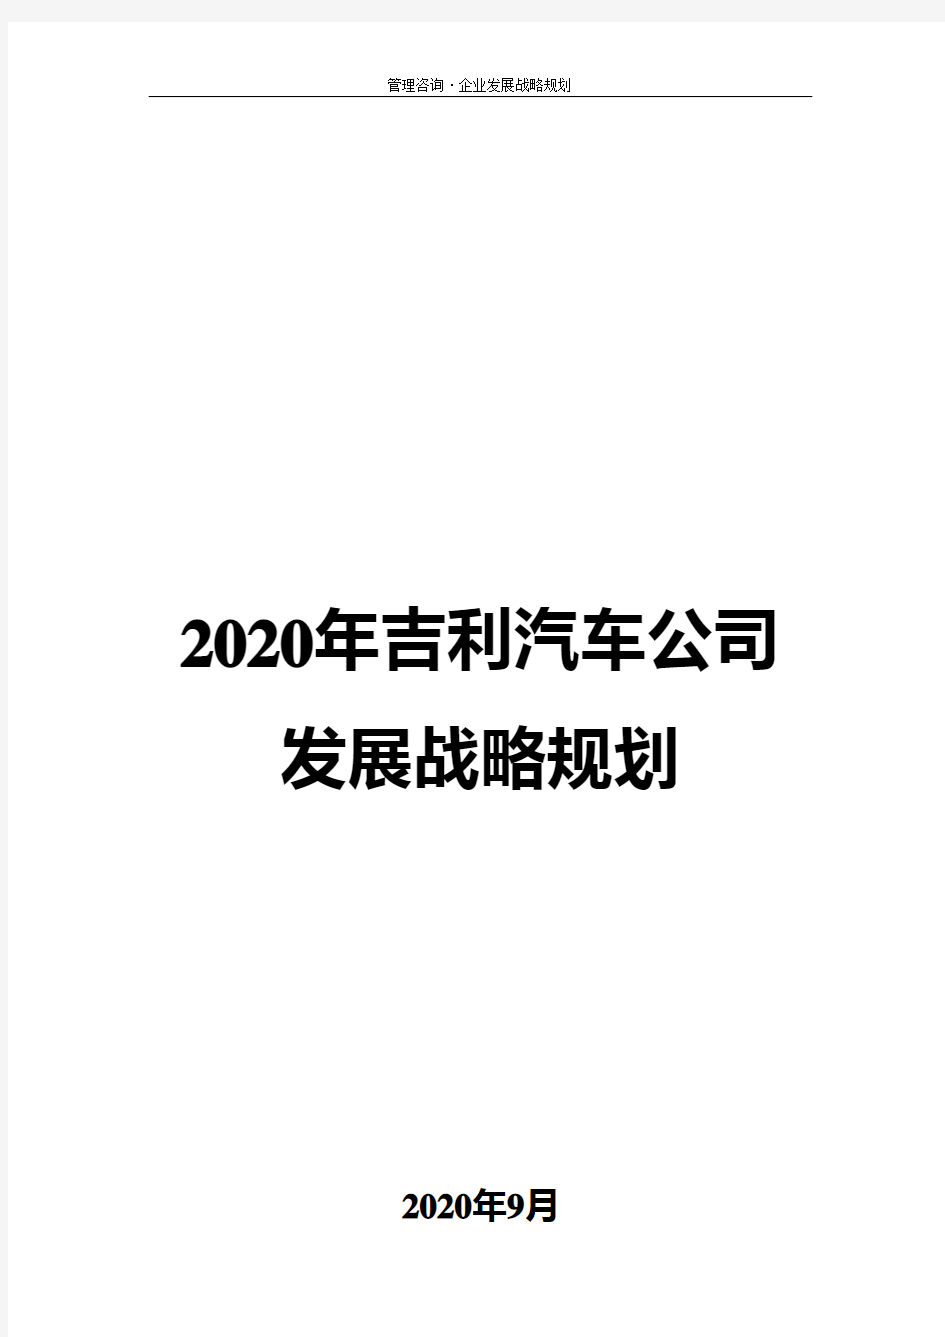 2020年吉利汽车公司发展战略规划